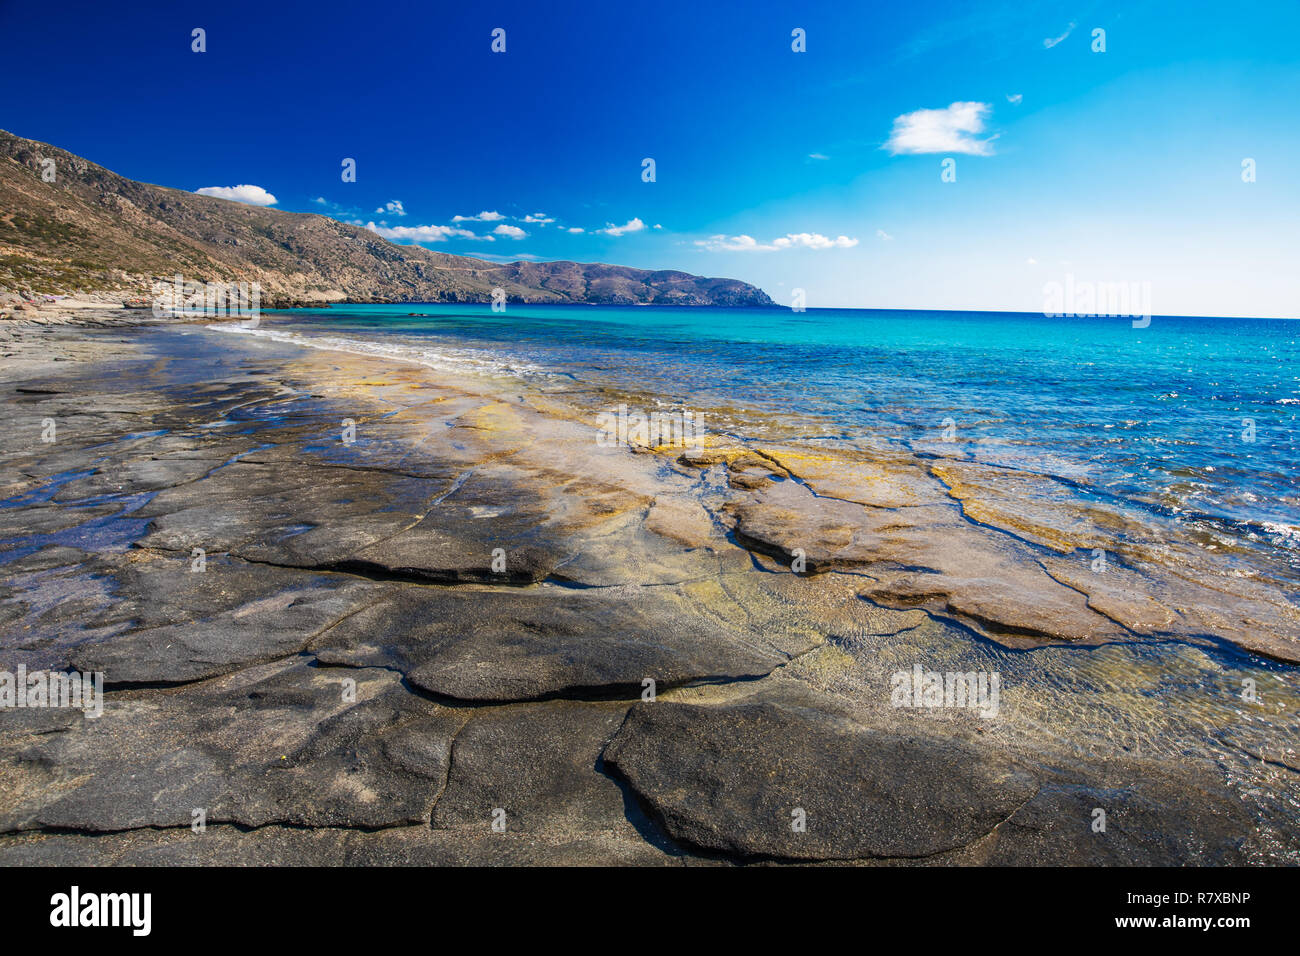 Strand in der Nähe von Kedrodasos Elafonissi Strand auf der Insel Kreta mit azurblauen Wasser, Griechenland, Europa. Kreta ist die größte und bevölkerungsreichste der Griechischen isl Stockfoto